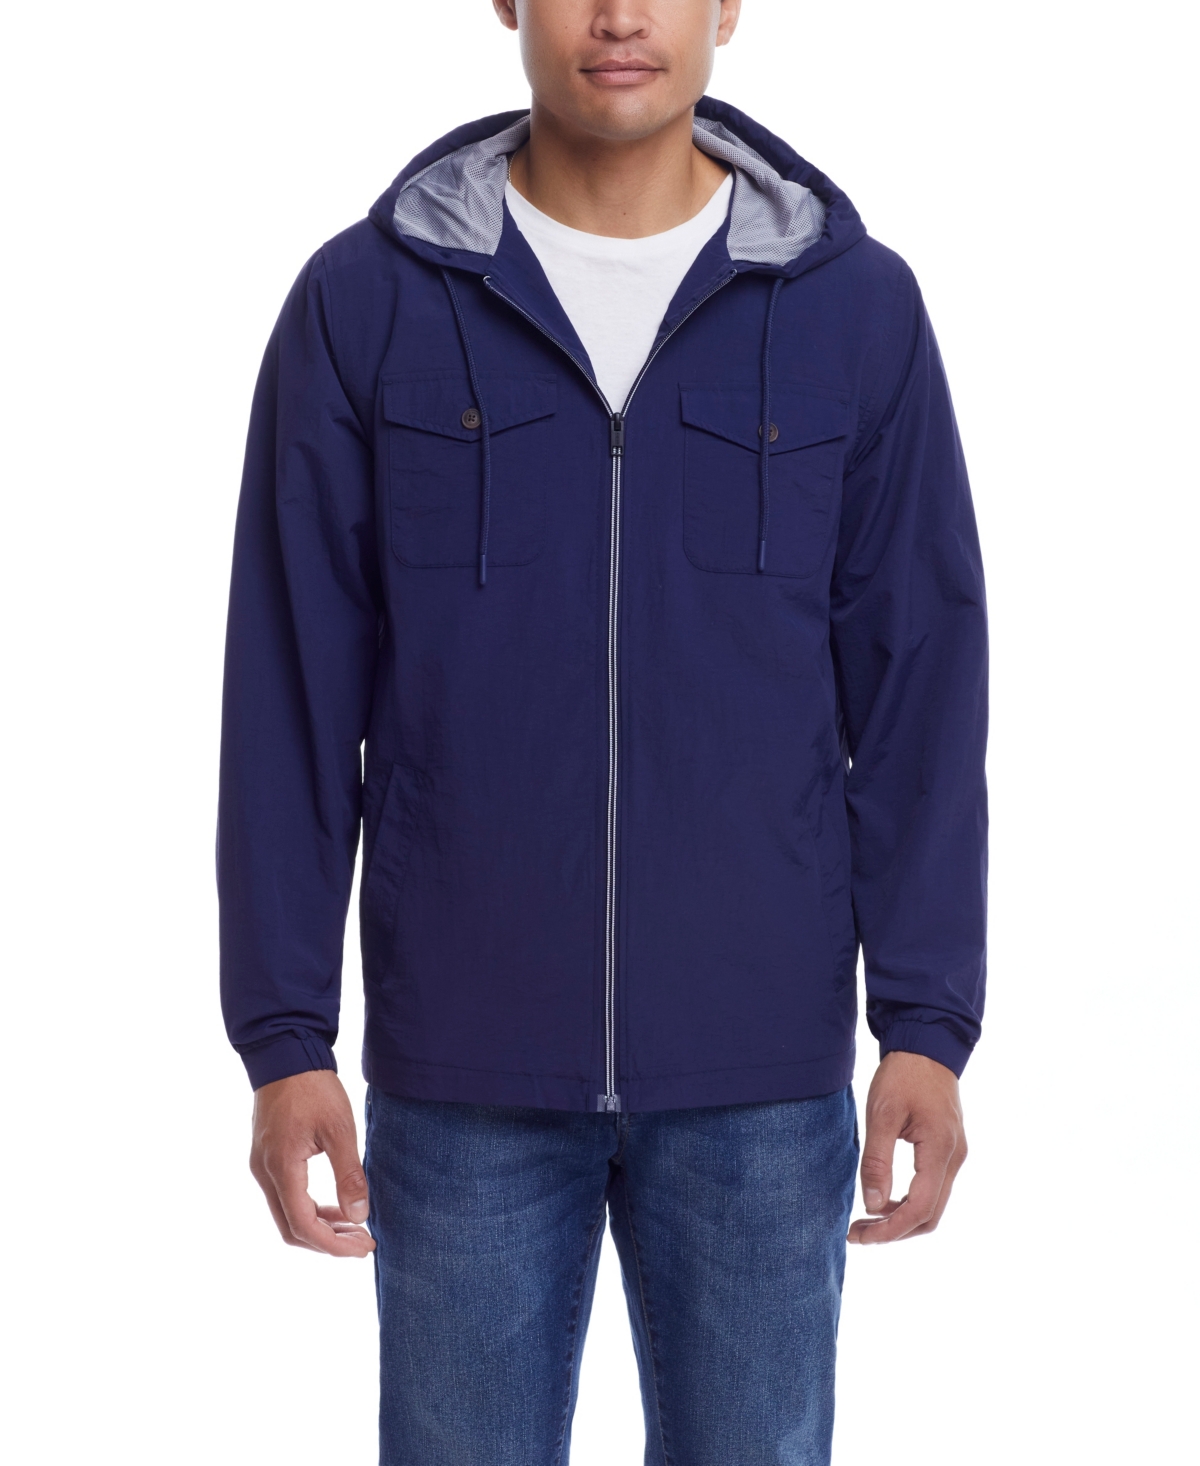 Men's Nylon Zip Front Hooded Jacket - Navy